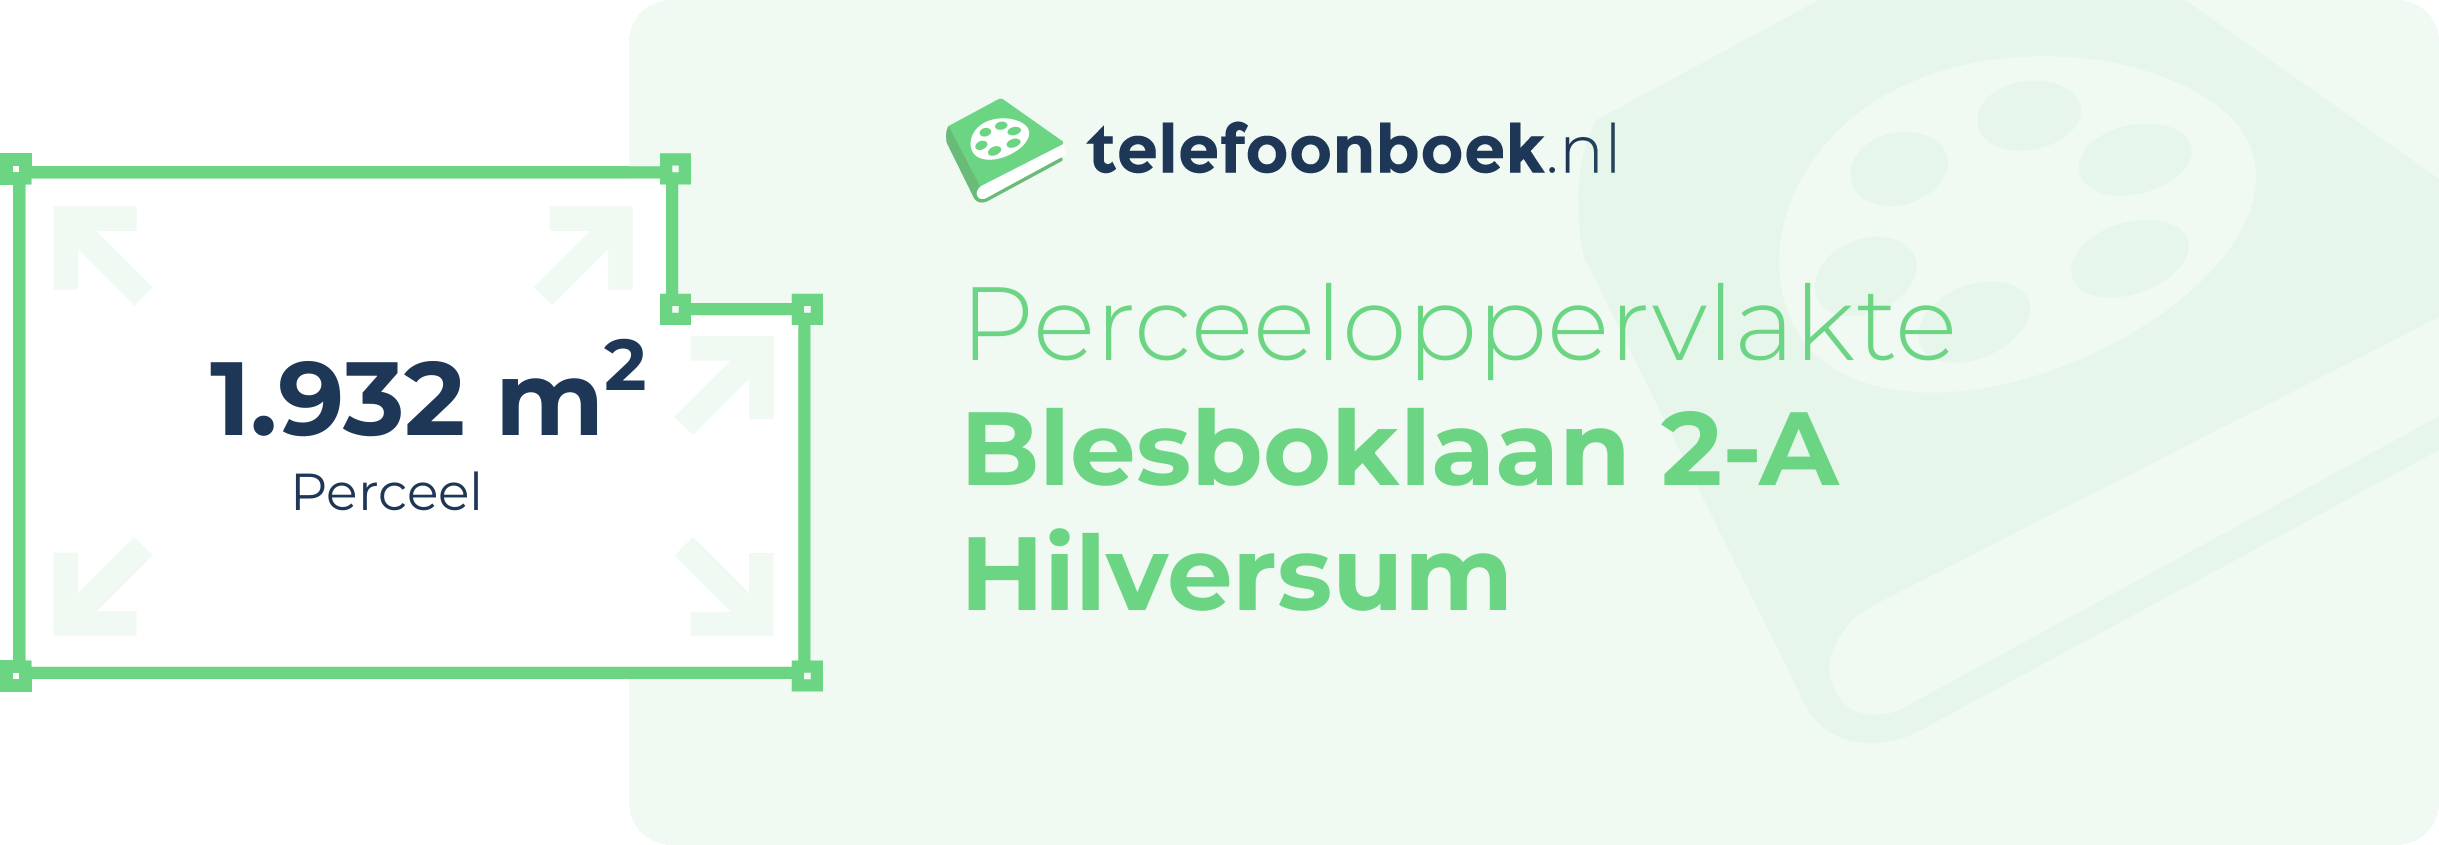 Perceeloppervlakte Blesboklaan 2-A Hilversum